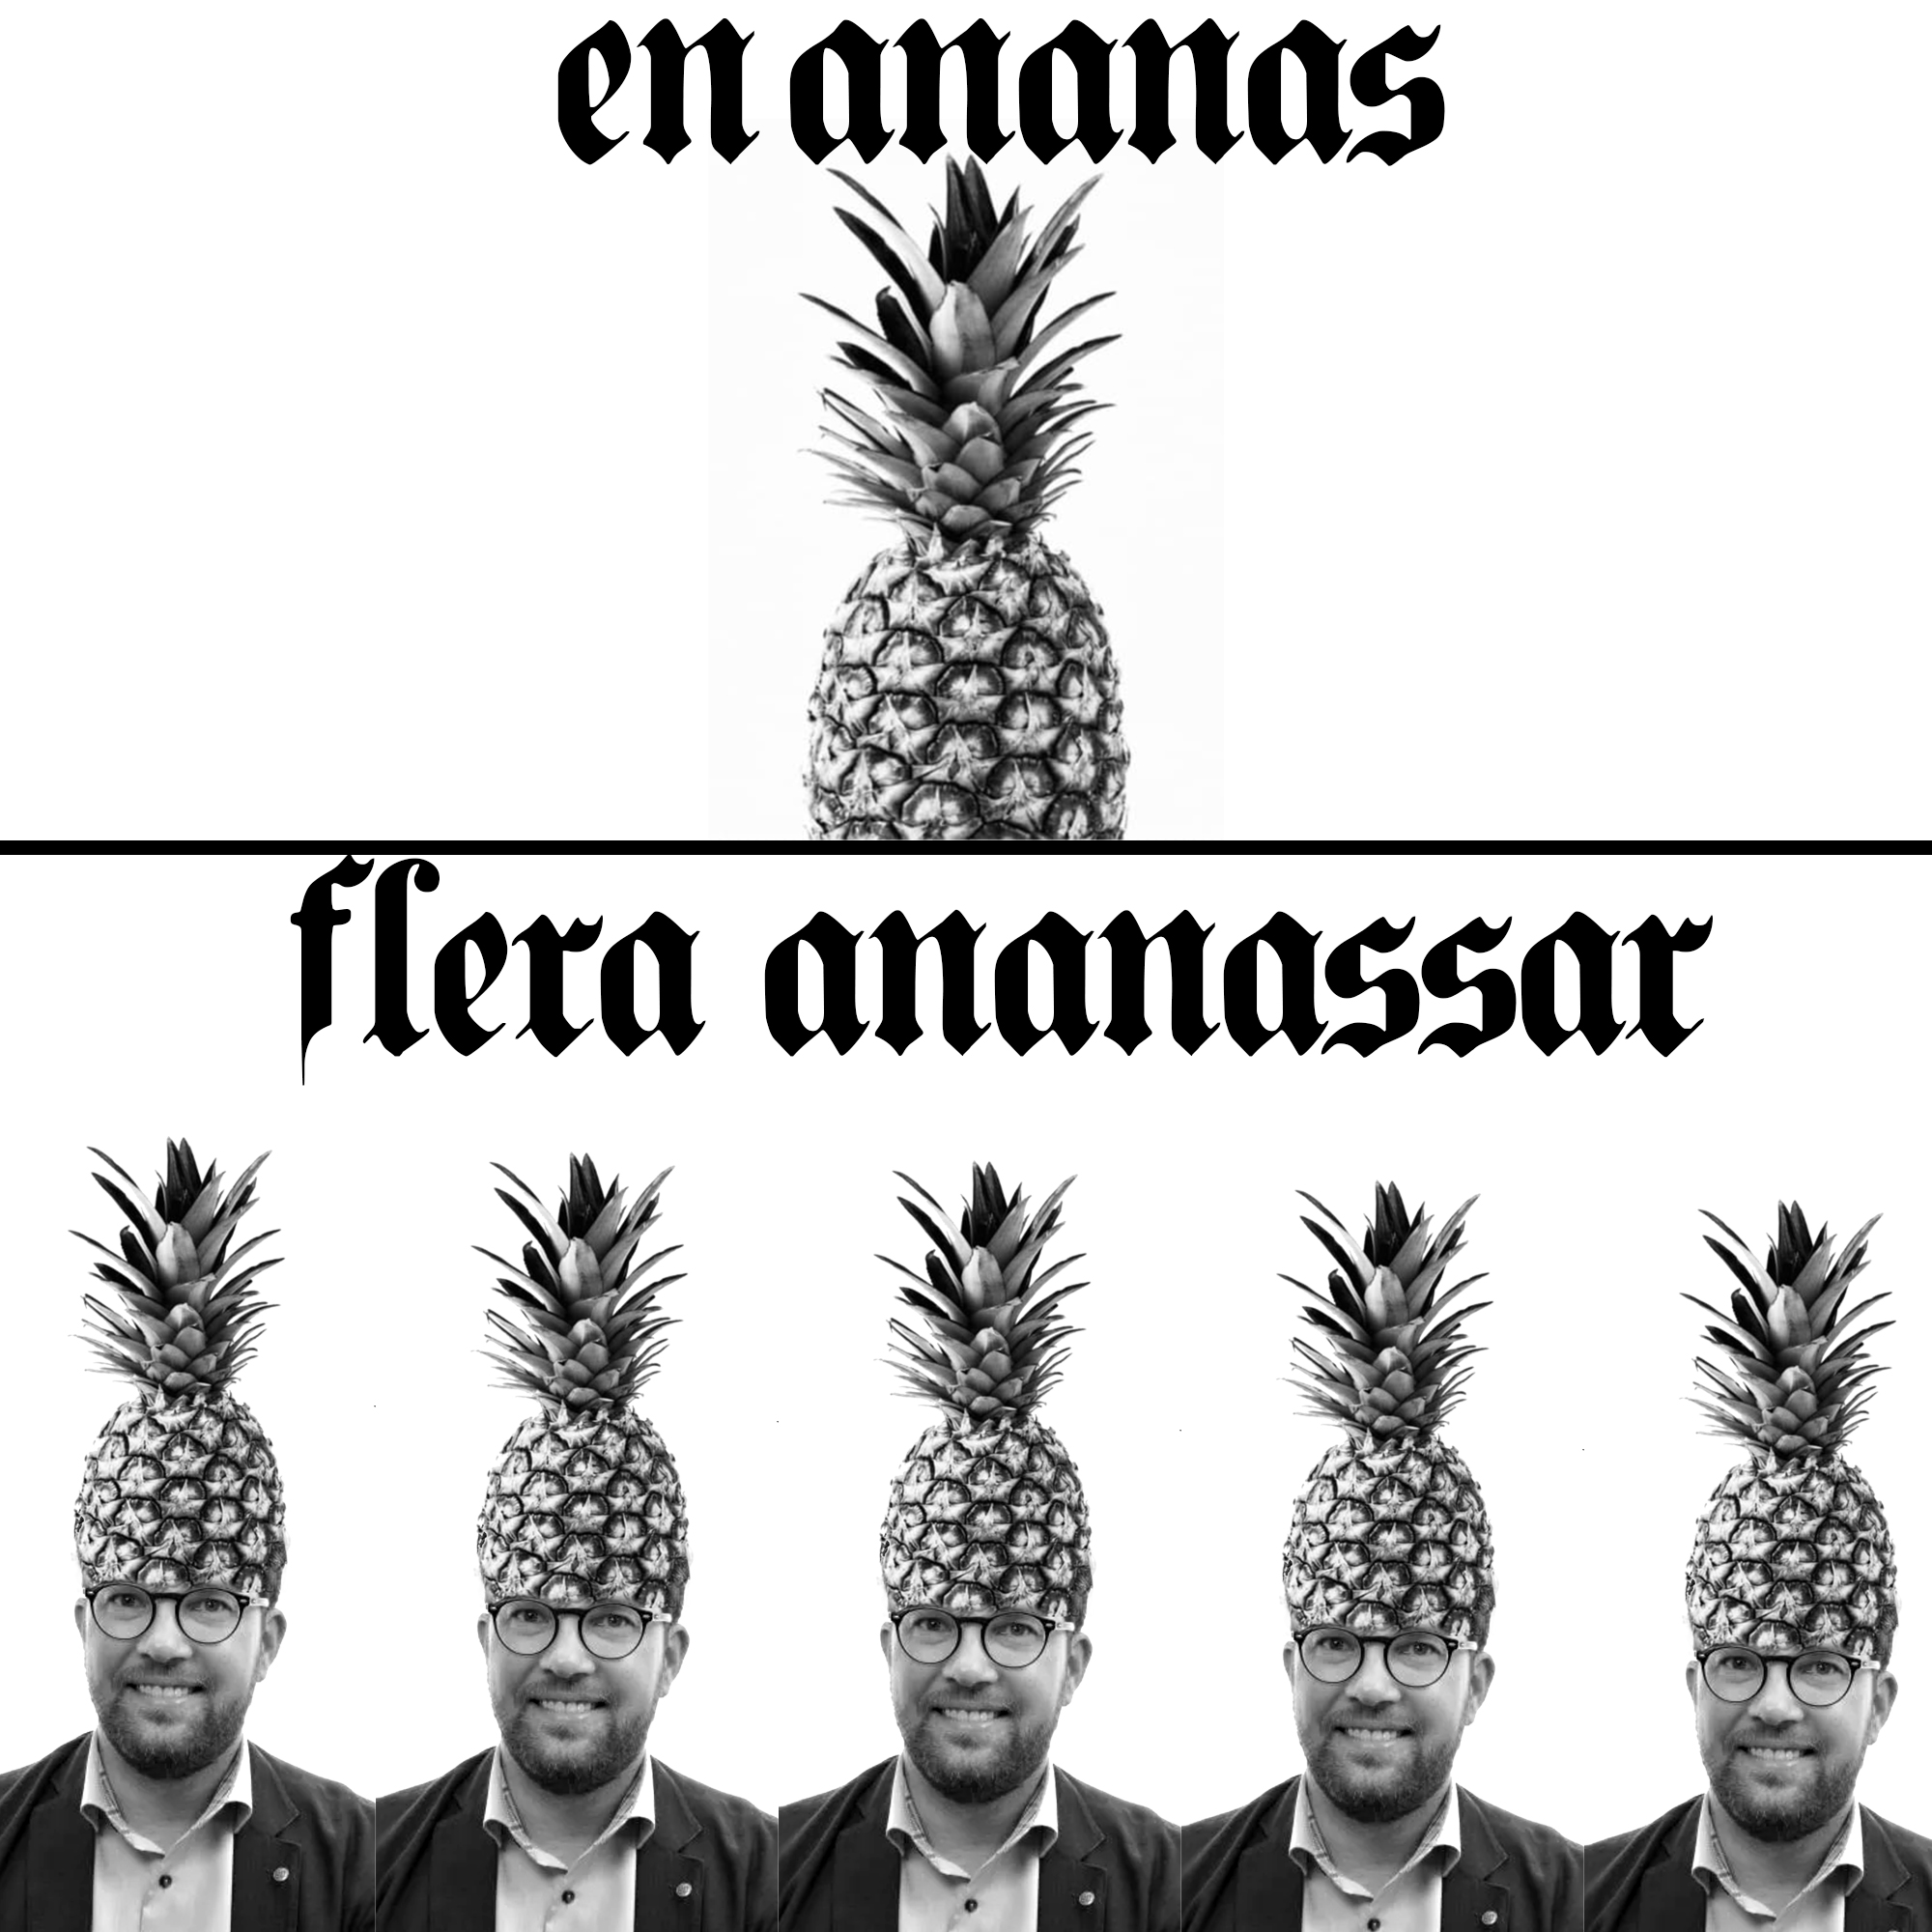 en-ananas-flera-ananassar